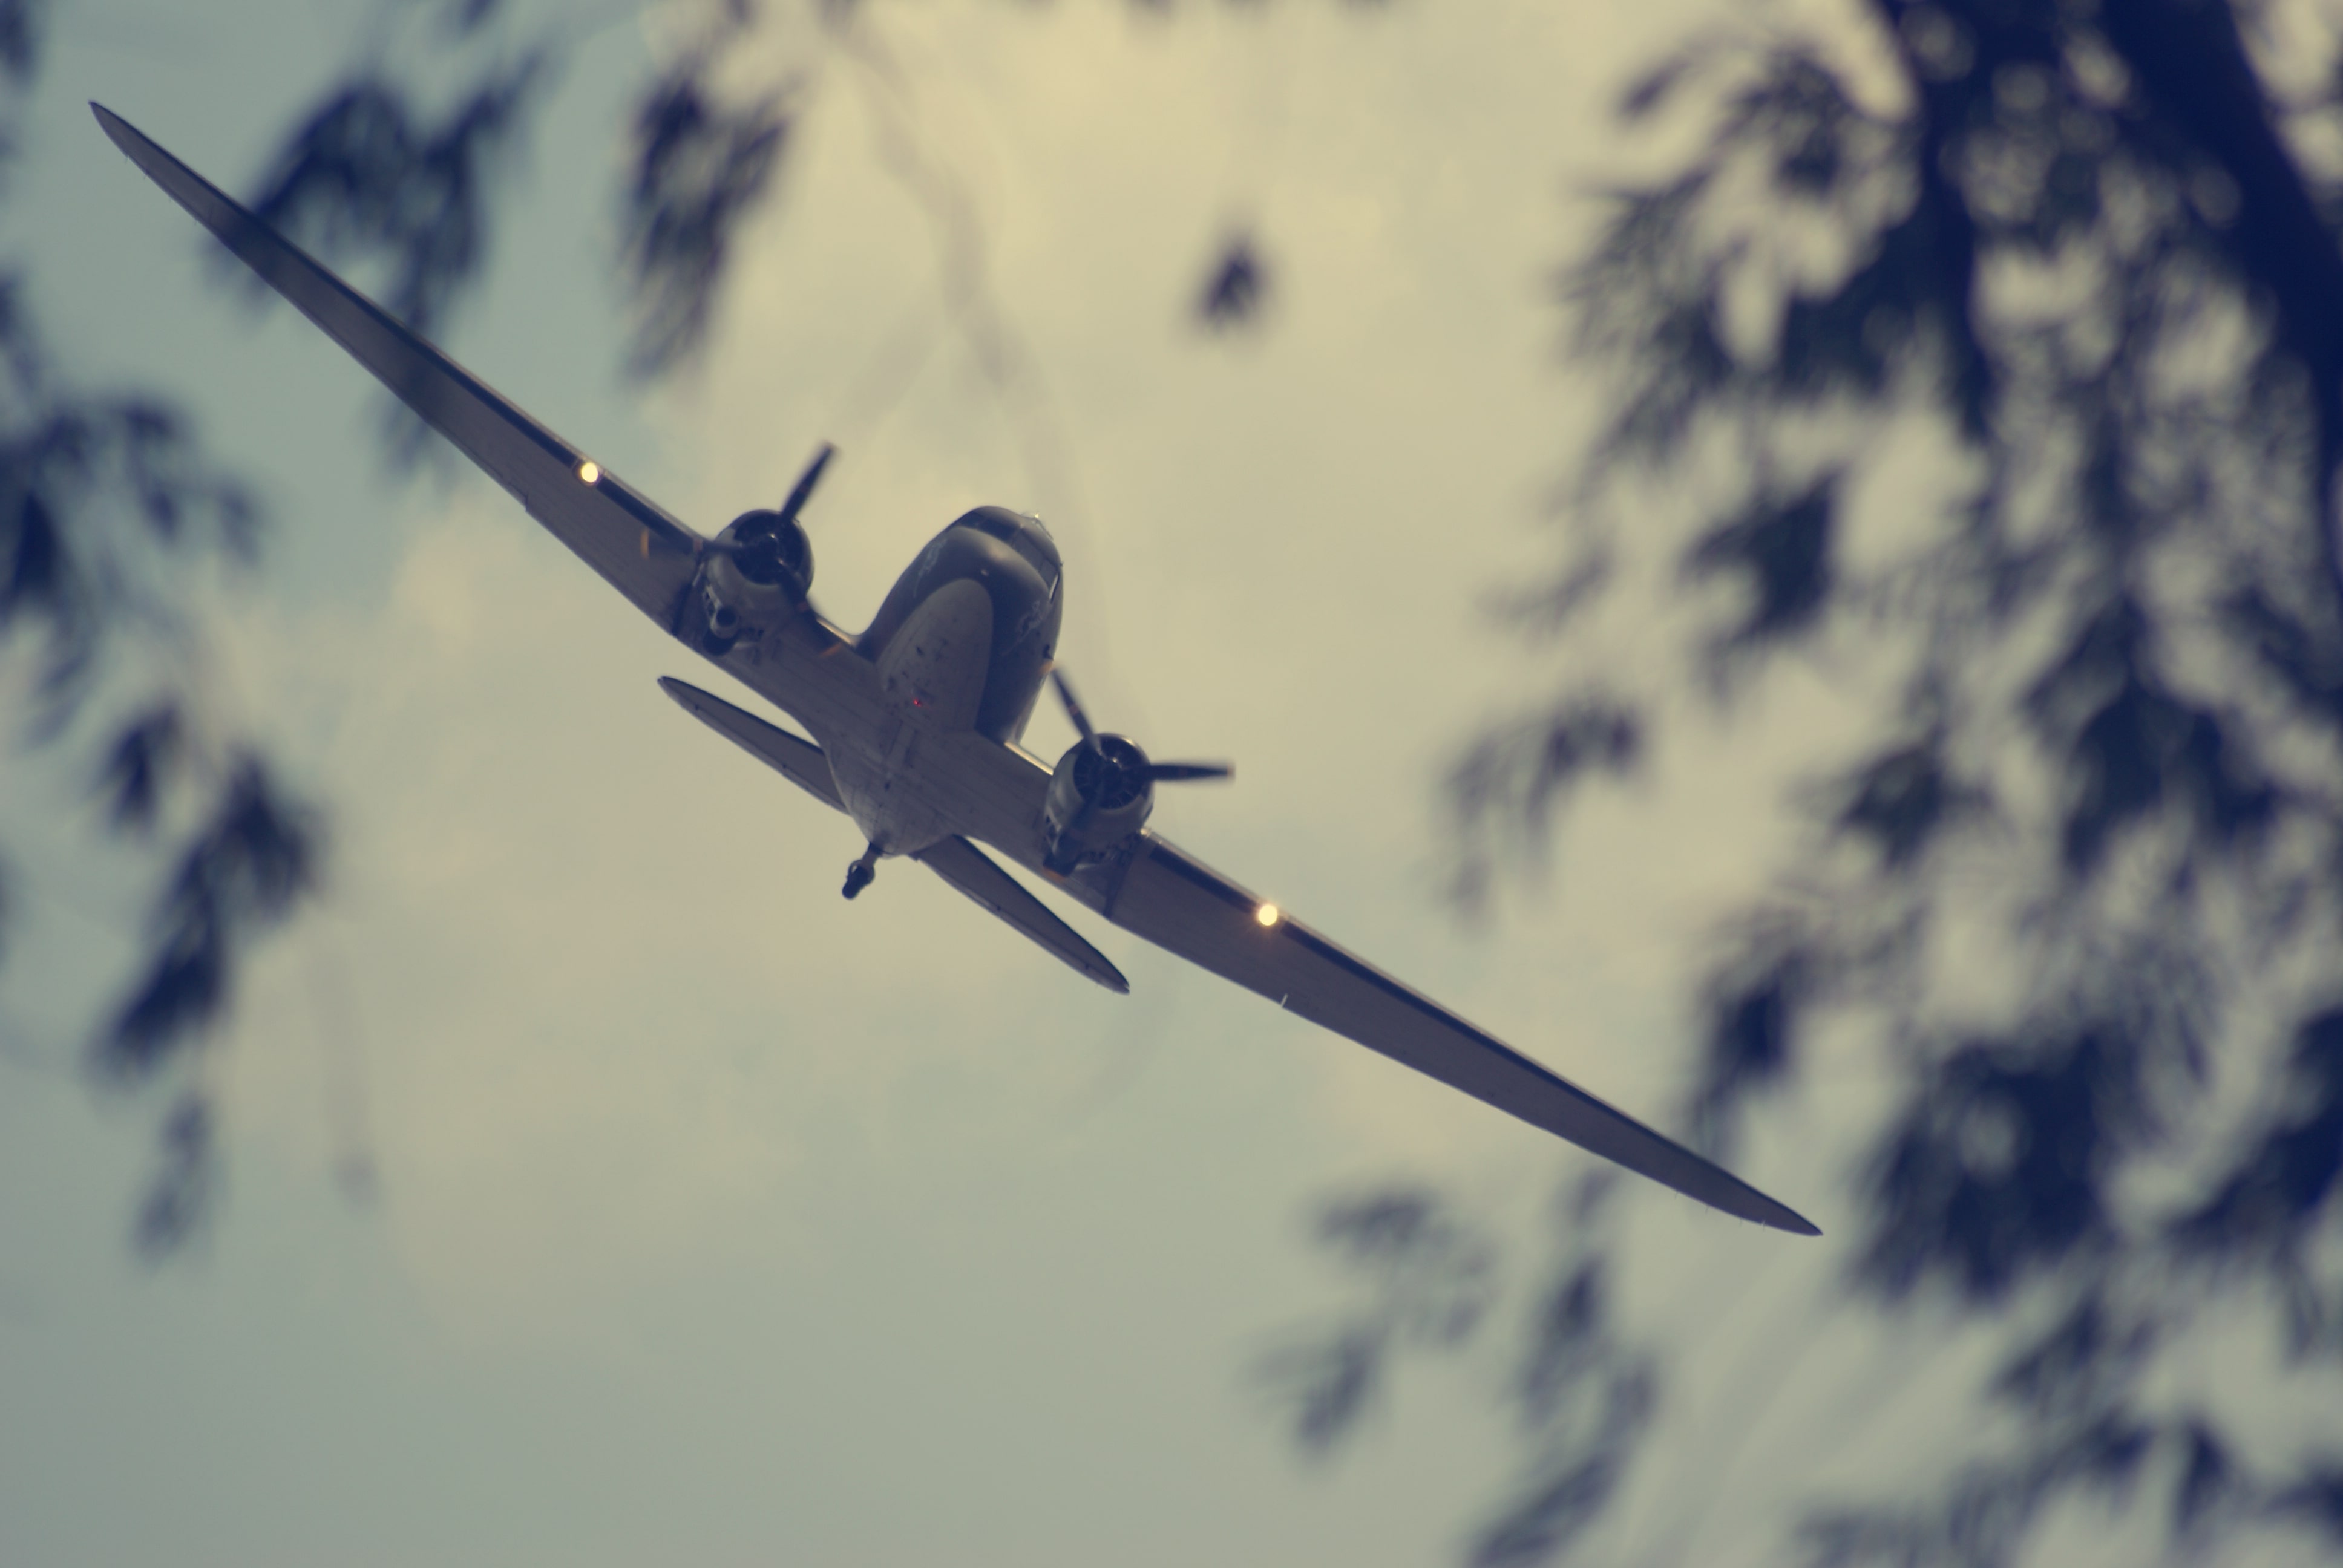 World War 2 plane flying over trees